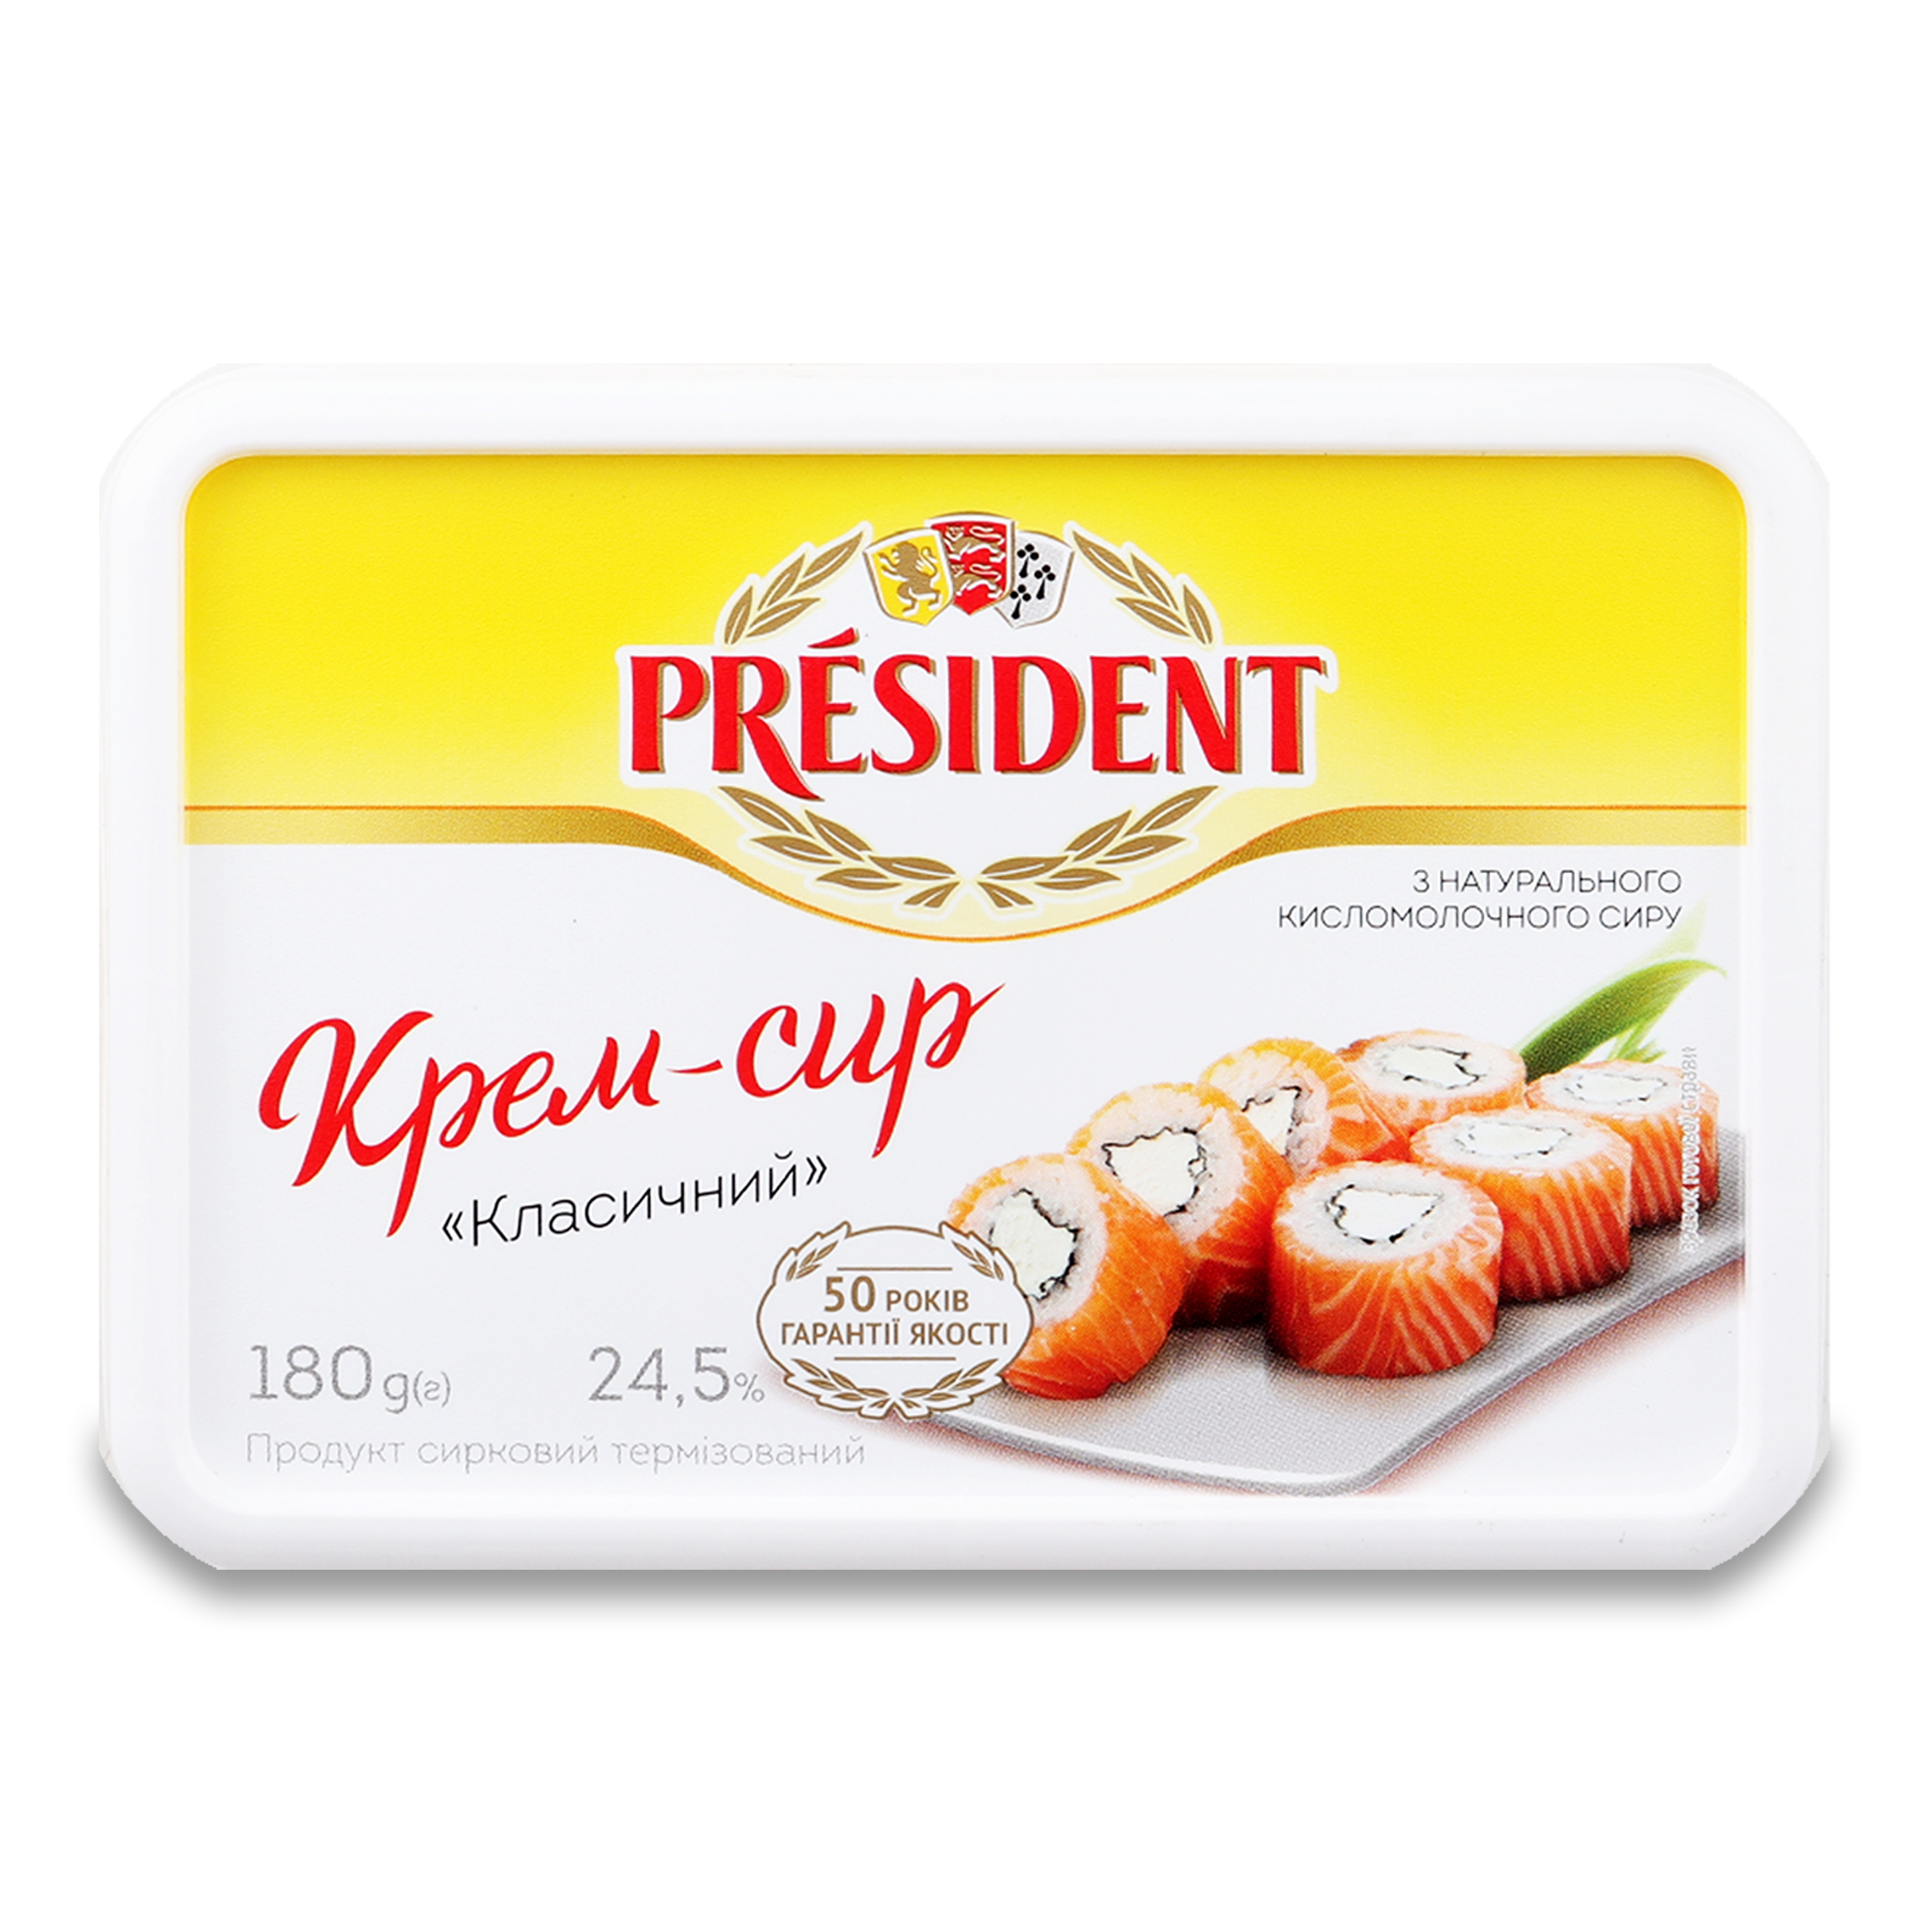 Крем-сыр President Классический продукт сырковый 24,5% 180г